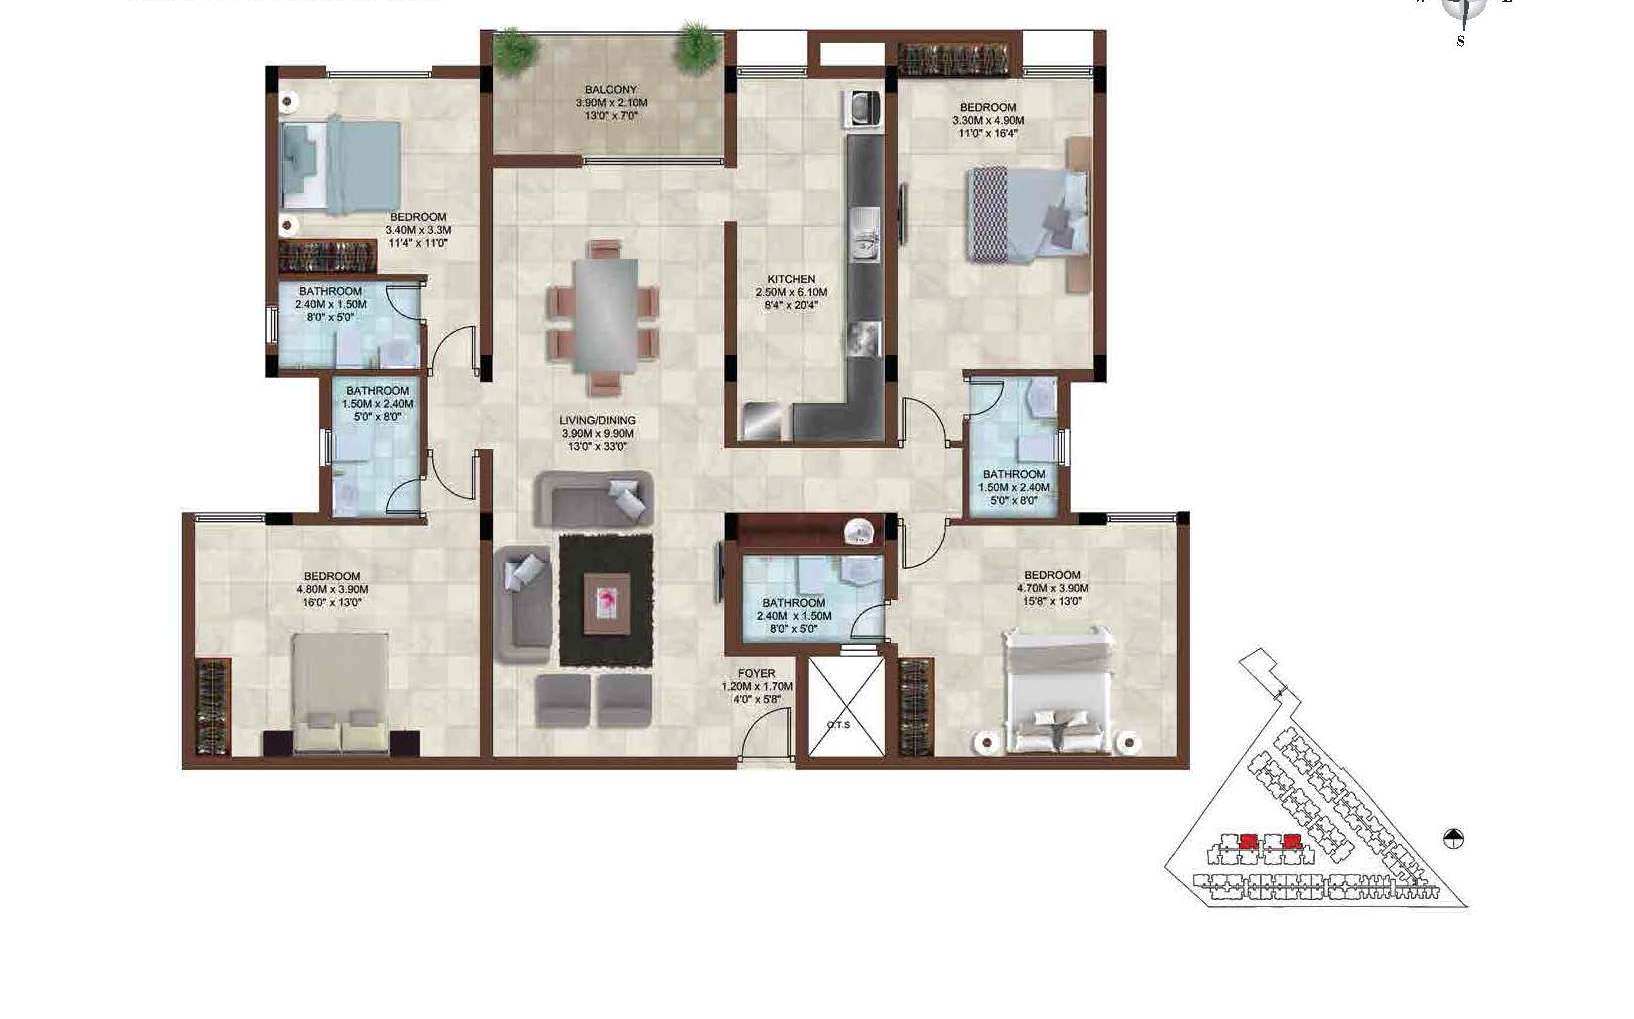 Casagrand Bellissimo Floor Plan